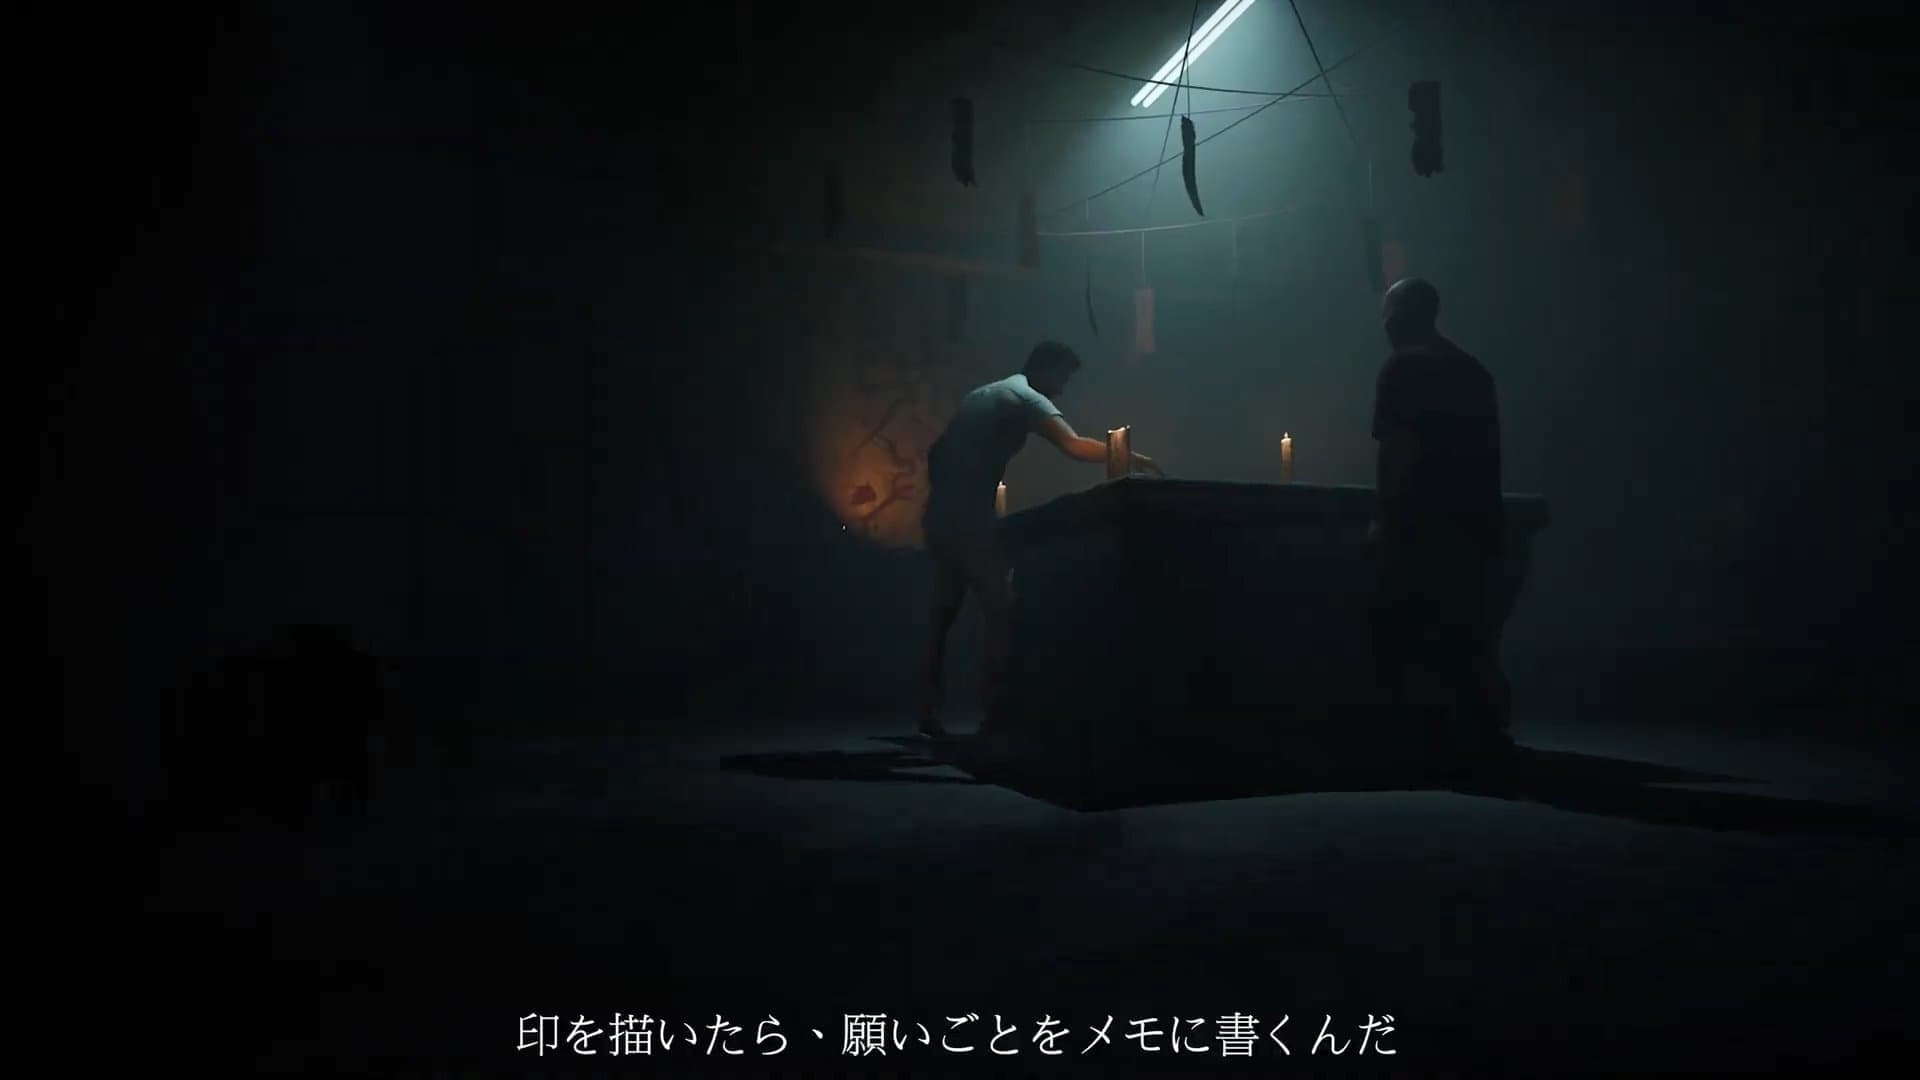 『女鬼橋2 釈魂路』の家庭用ゲーム機版が10月31日に発売決定。Steamで「非常に好評」となっている群像劇ホラーゲーム_002